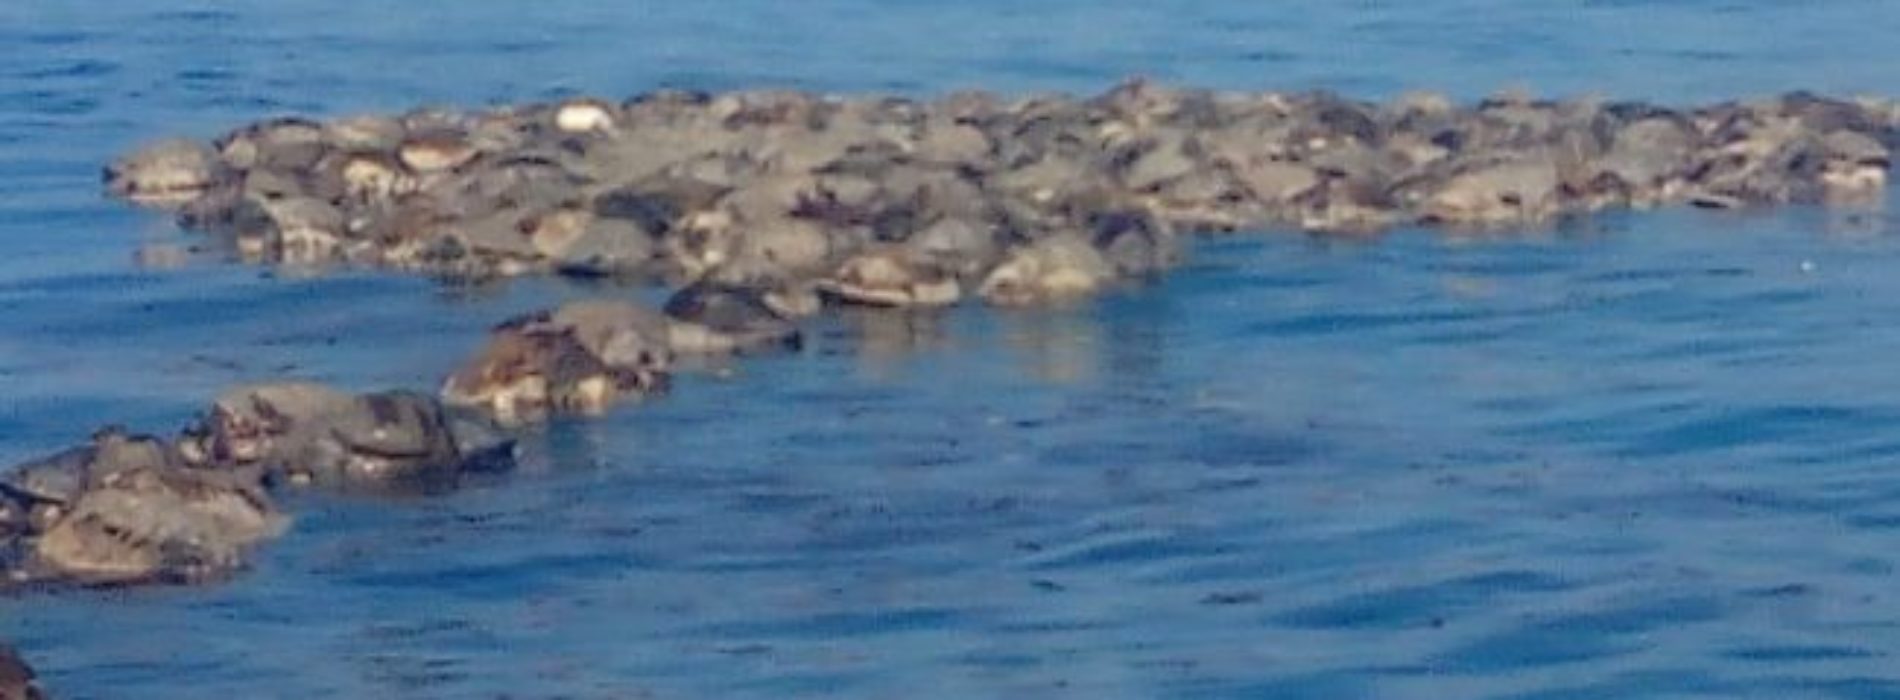 Enmallamiento de tortugas marinas en la Costa de Oaxaca se
realizó con red prohida de pesca: Profepa